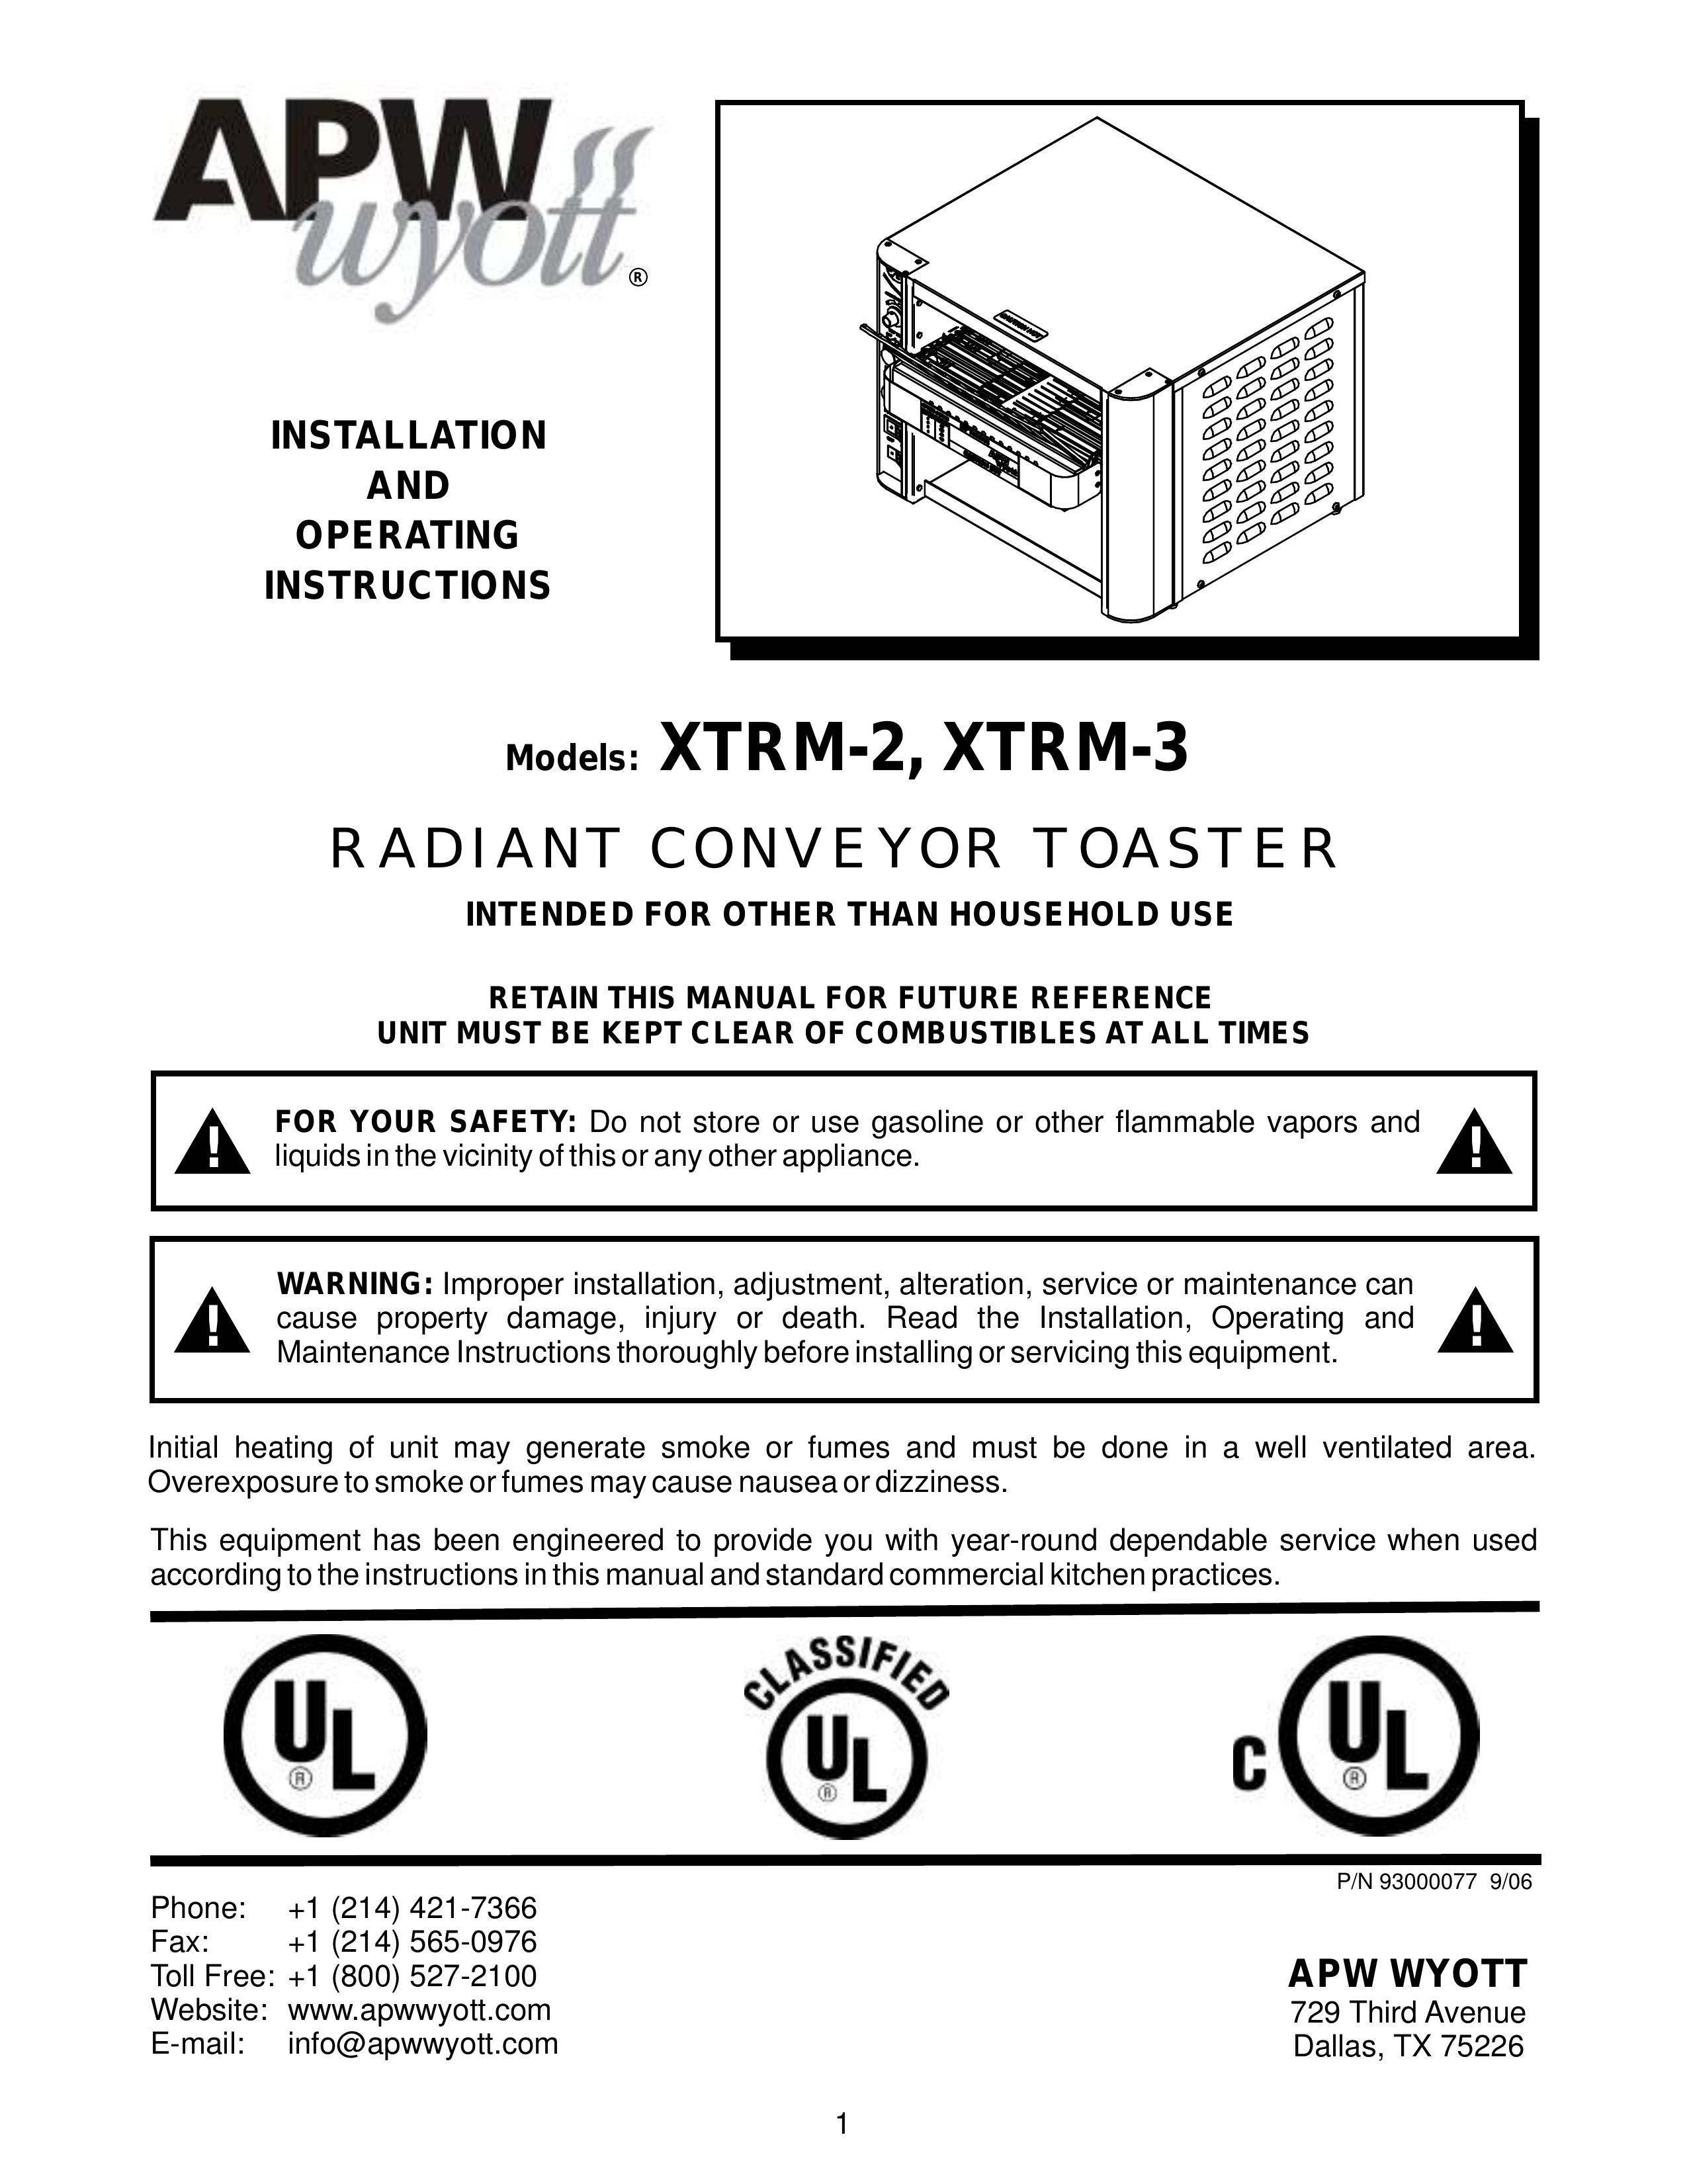 APW Wyott XTRM-3 Toaster User Manual